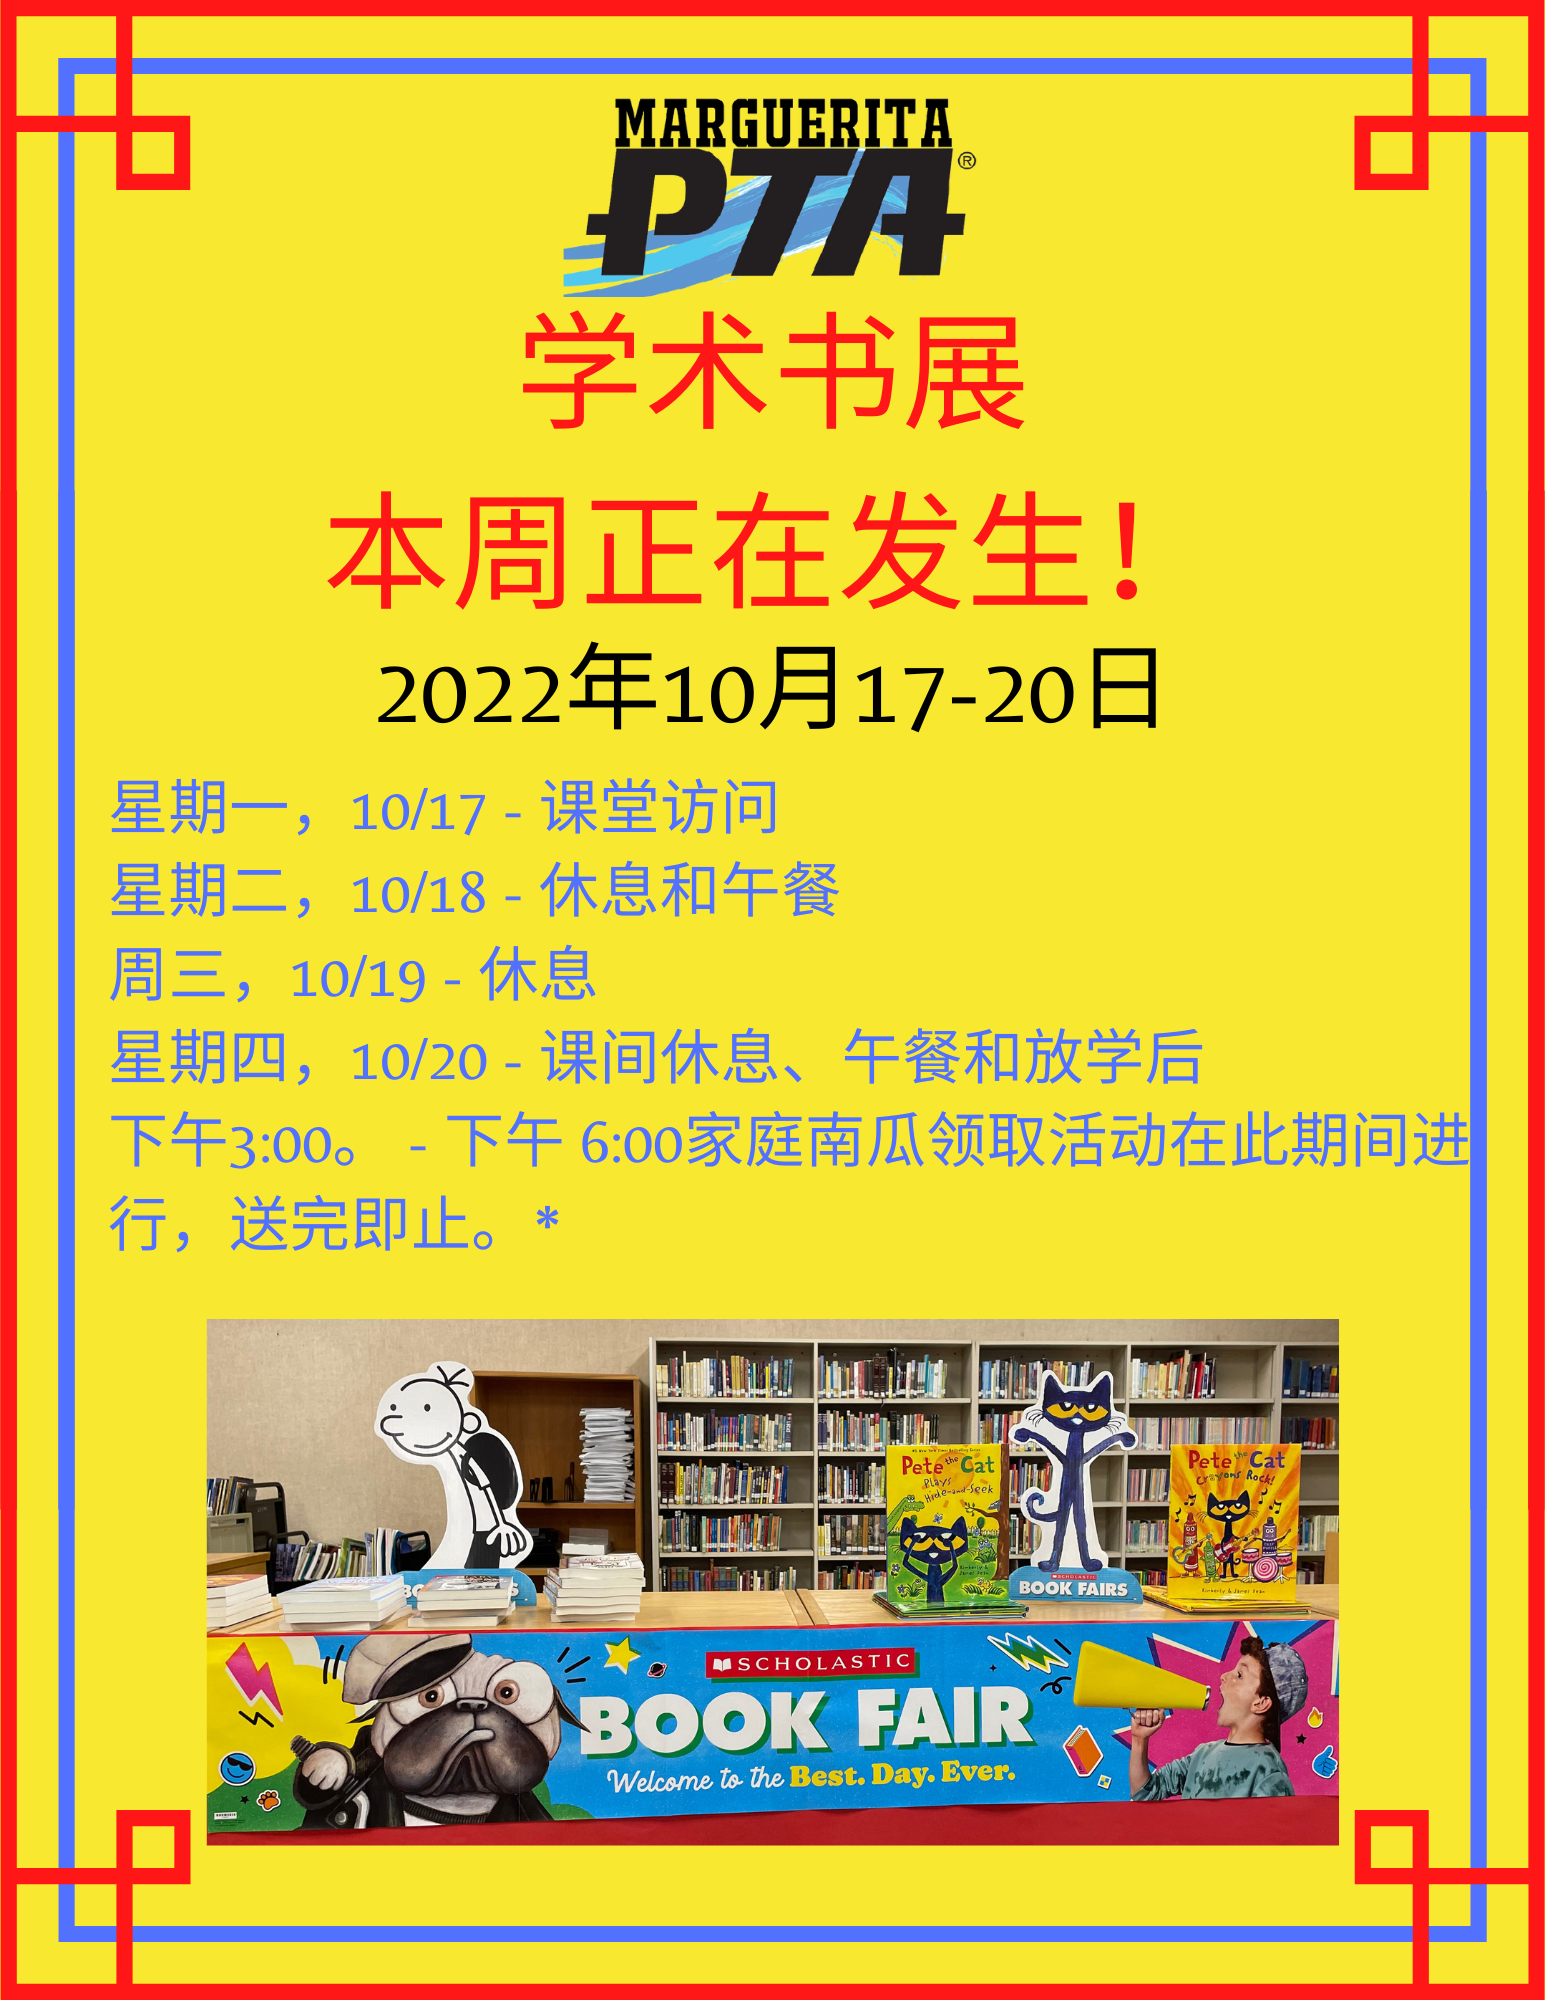 Scholastic Book Fair: 4/25/22 – 5/2/22